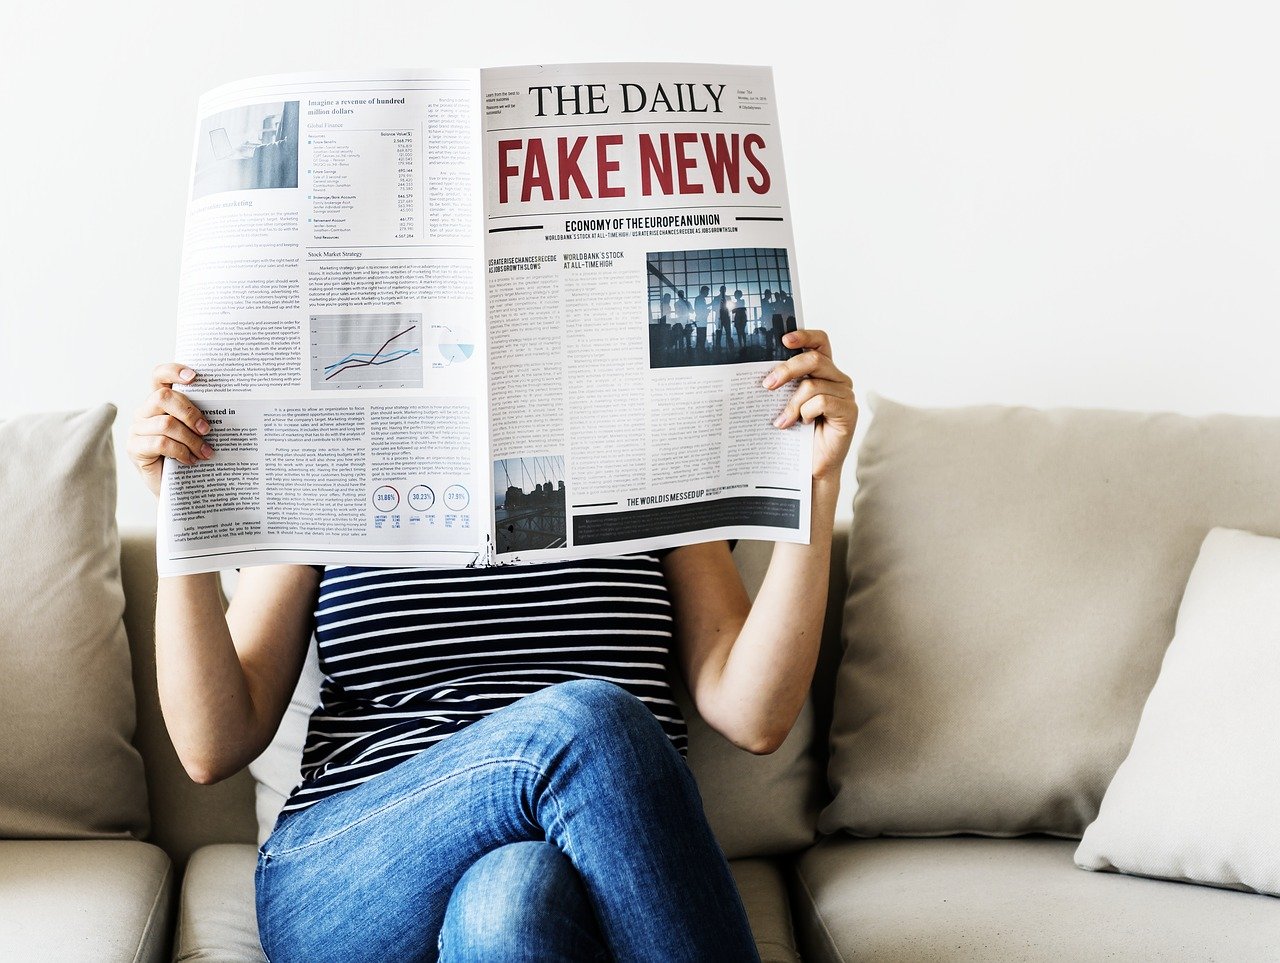 Perchè condividiamo fake news